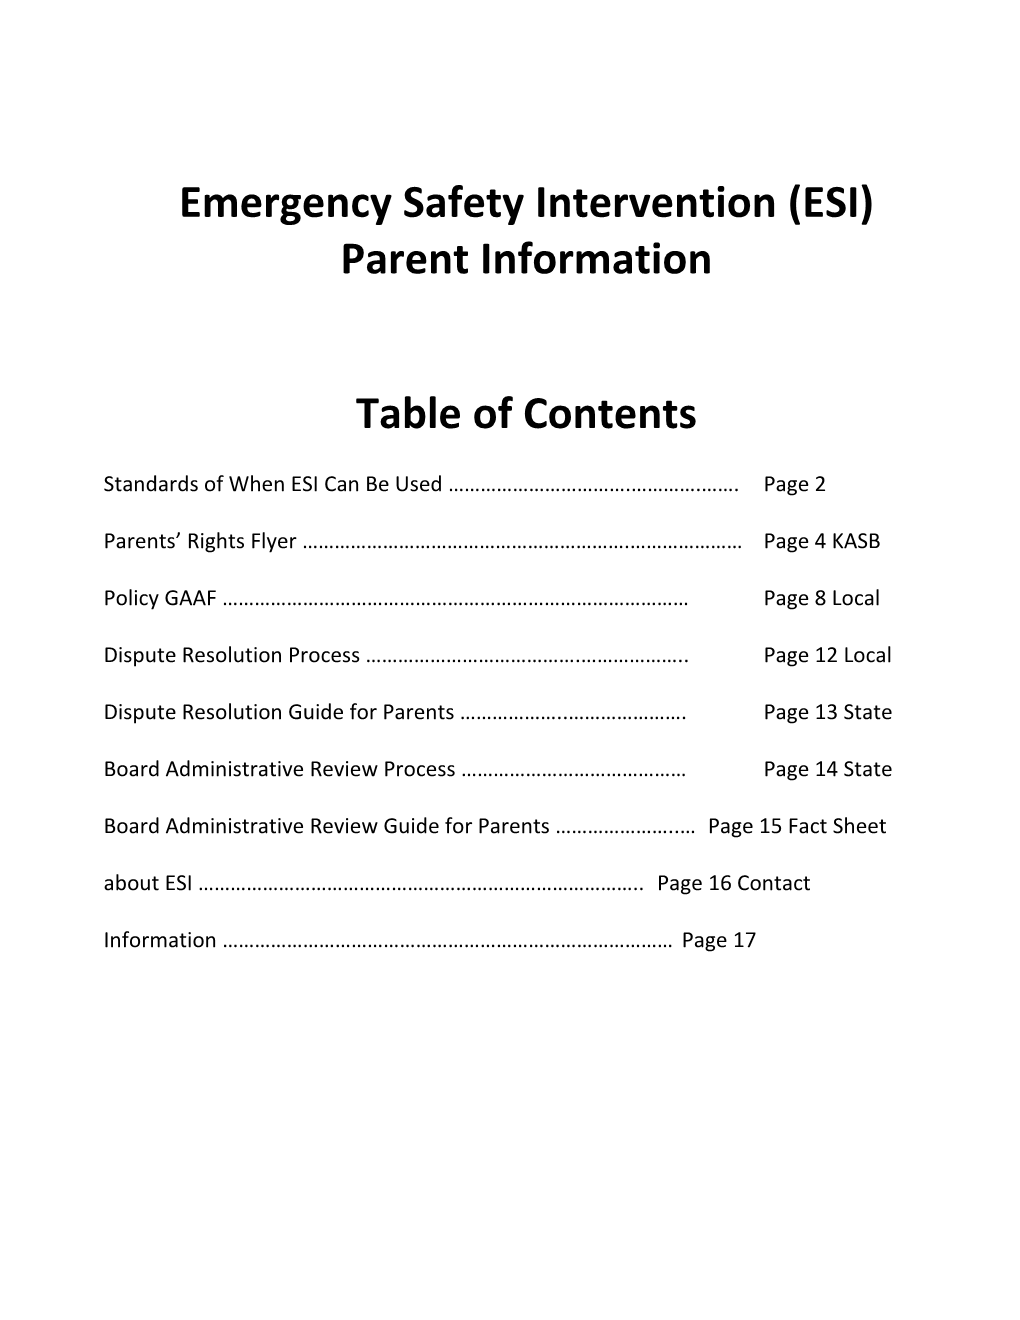 Emergencysafetyintervention(ESI) Parentinformation